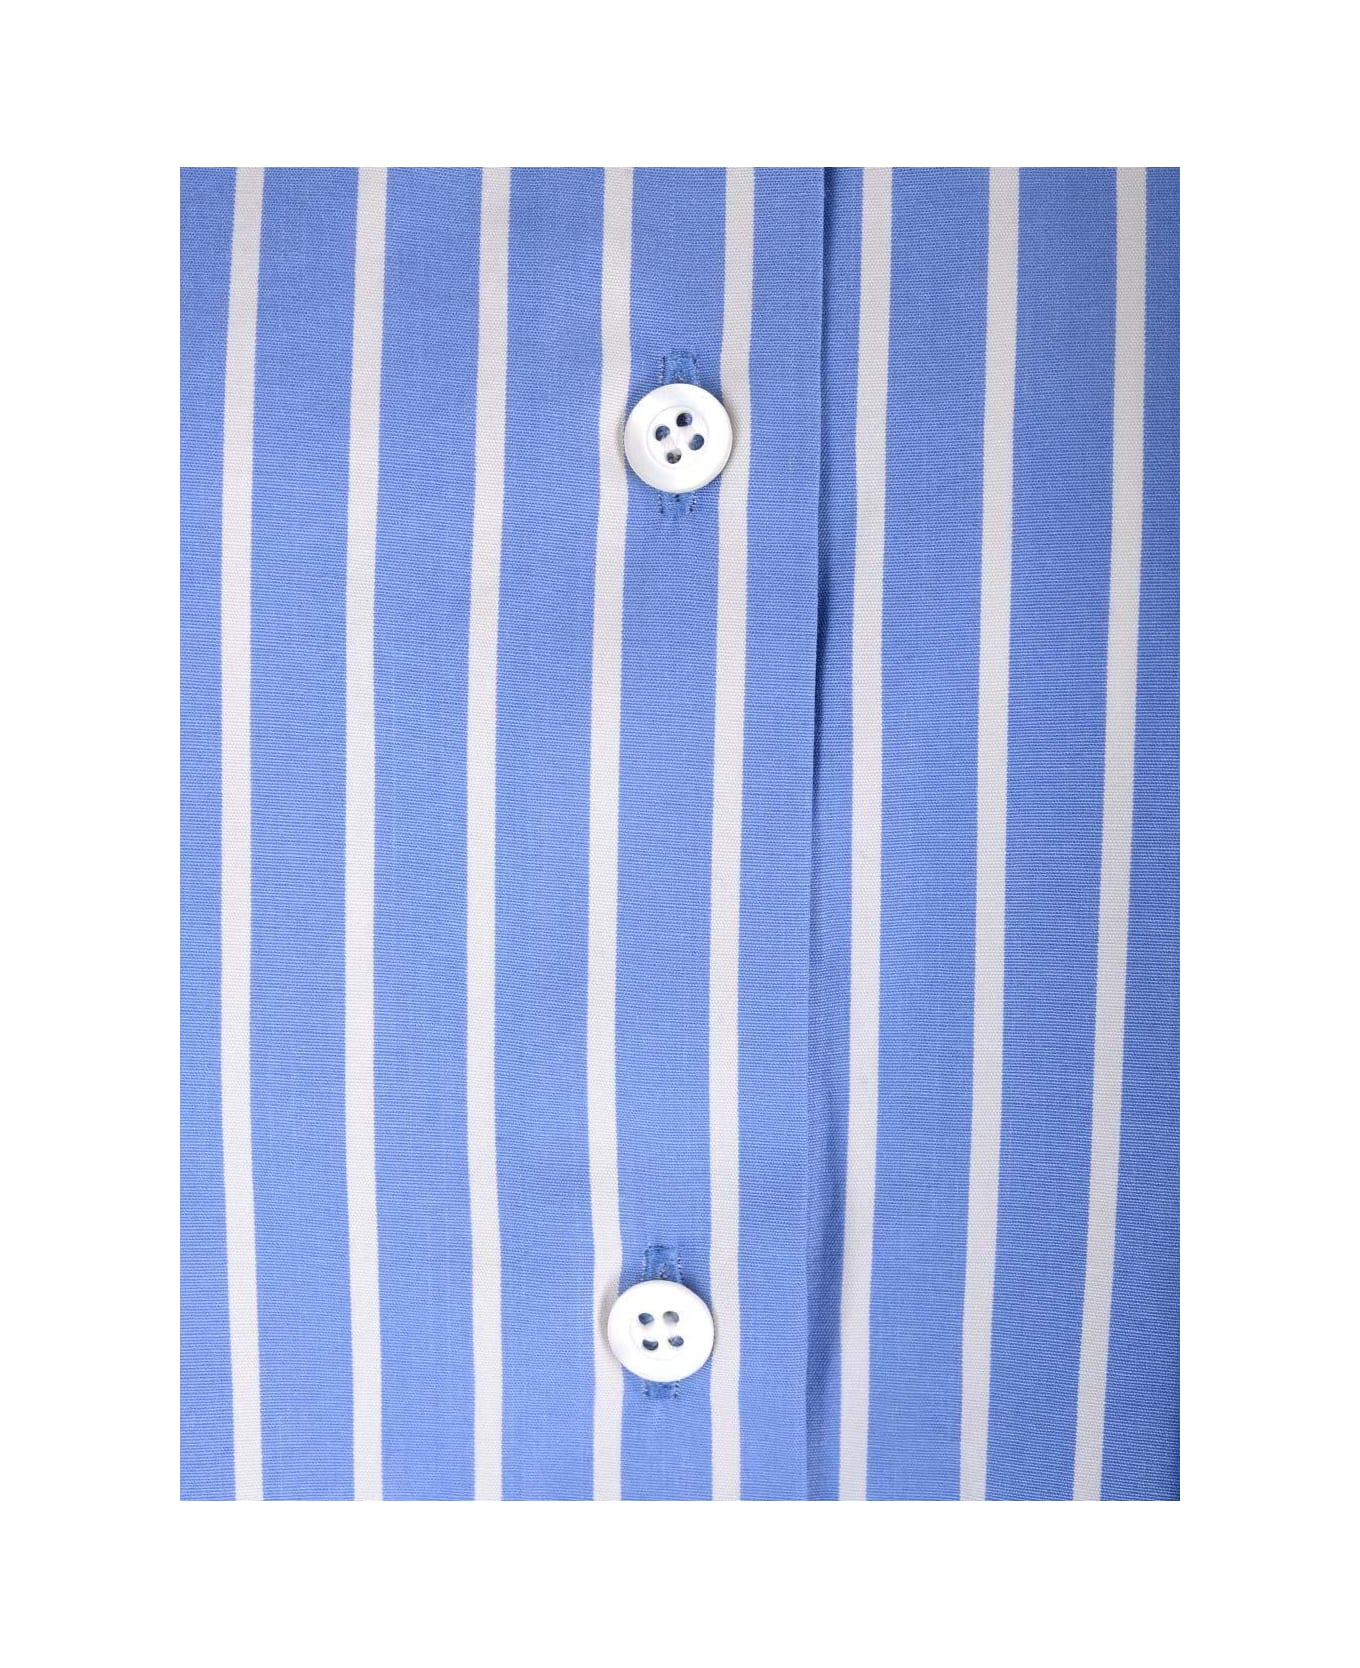 Dries Van Noten Striped Button-up Shirt - Light Blue